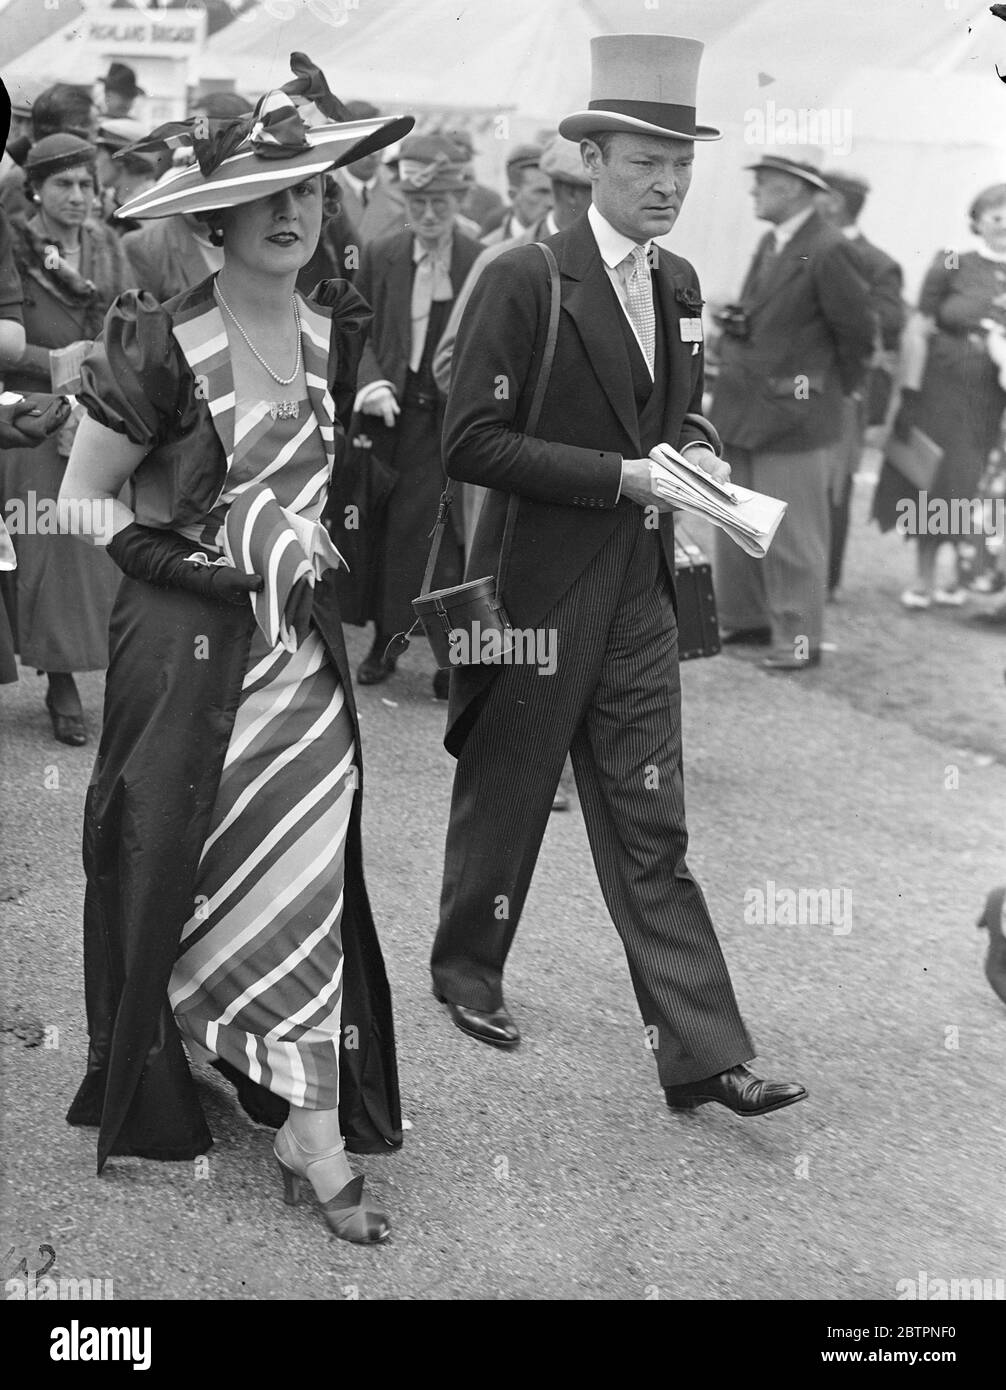 La moda arcobaleno ad Ascot. Mostre fotografiche: La signora W. J. Connell indossa una scintillante moda arcobaleno il secondo giorno della riunione di Ascot. 16 giugno 1937 Foto Stock